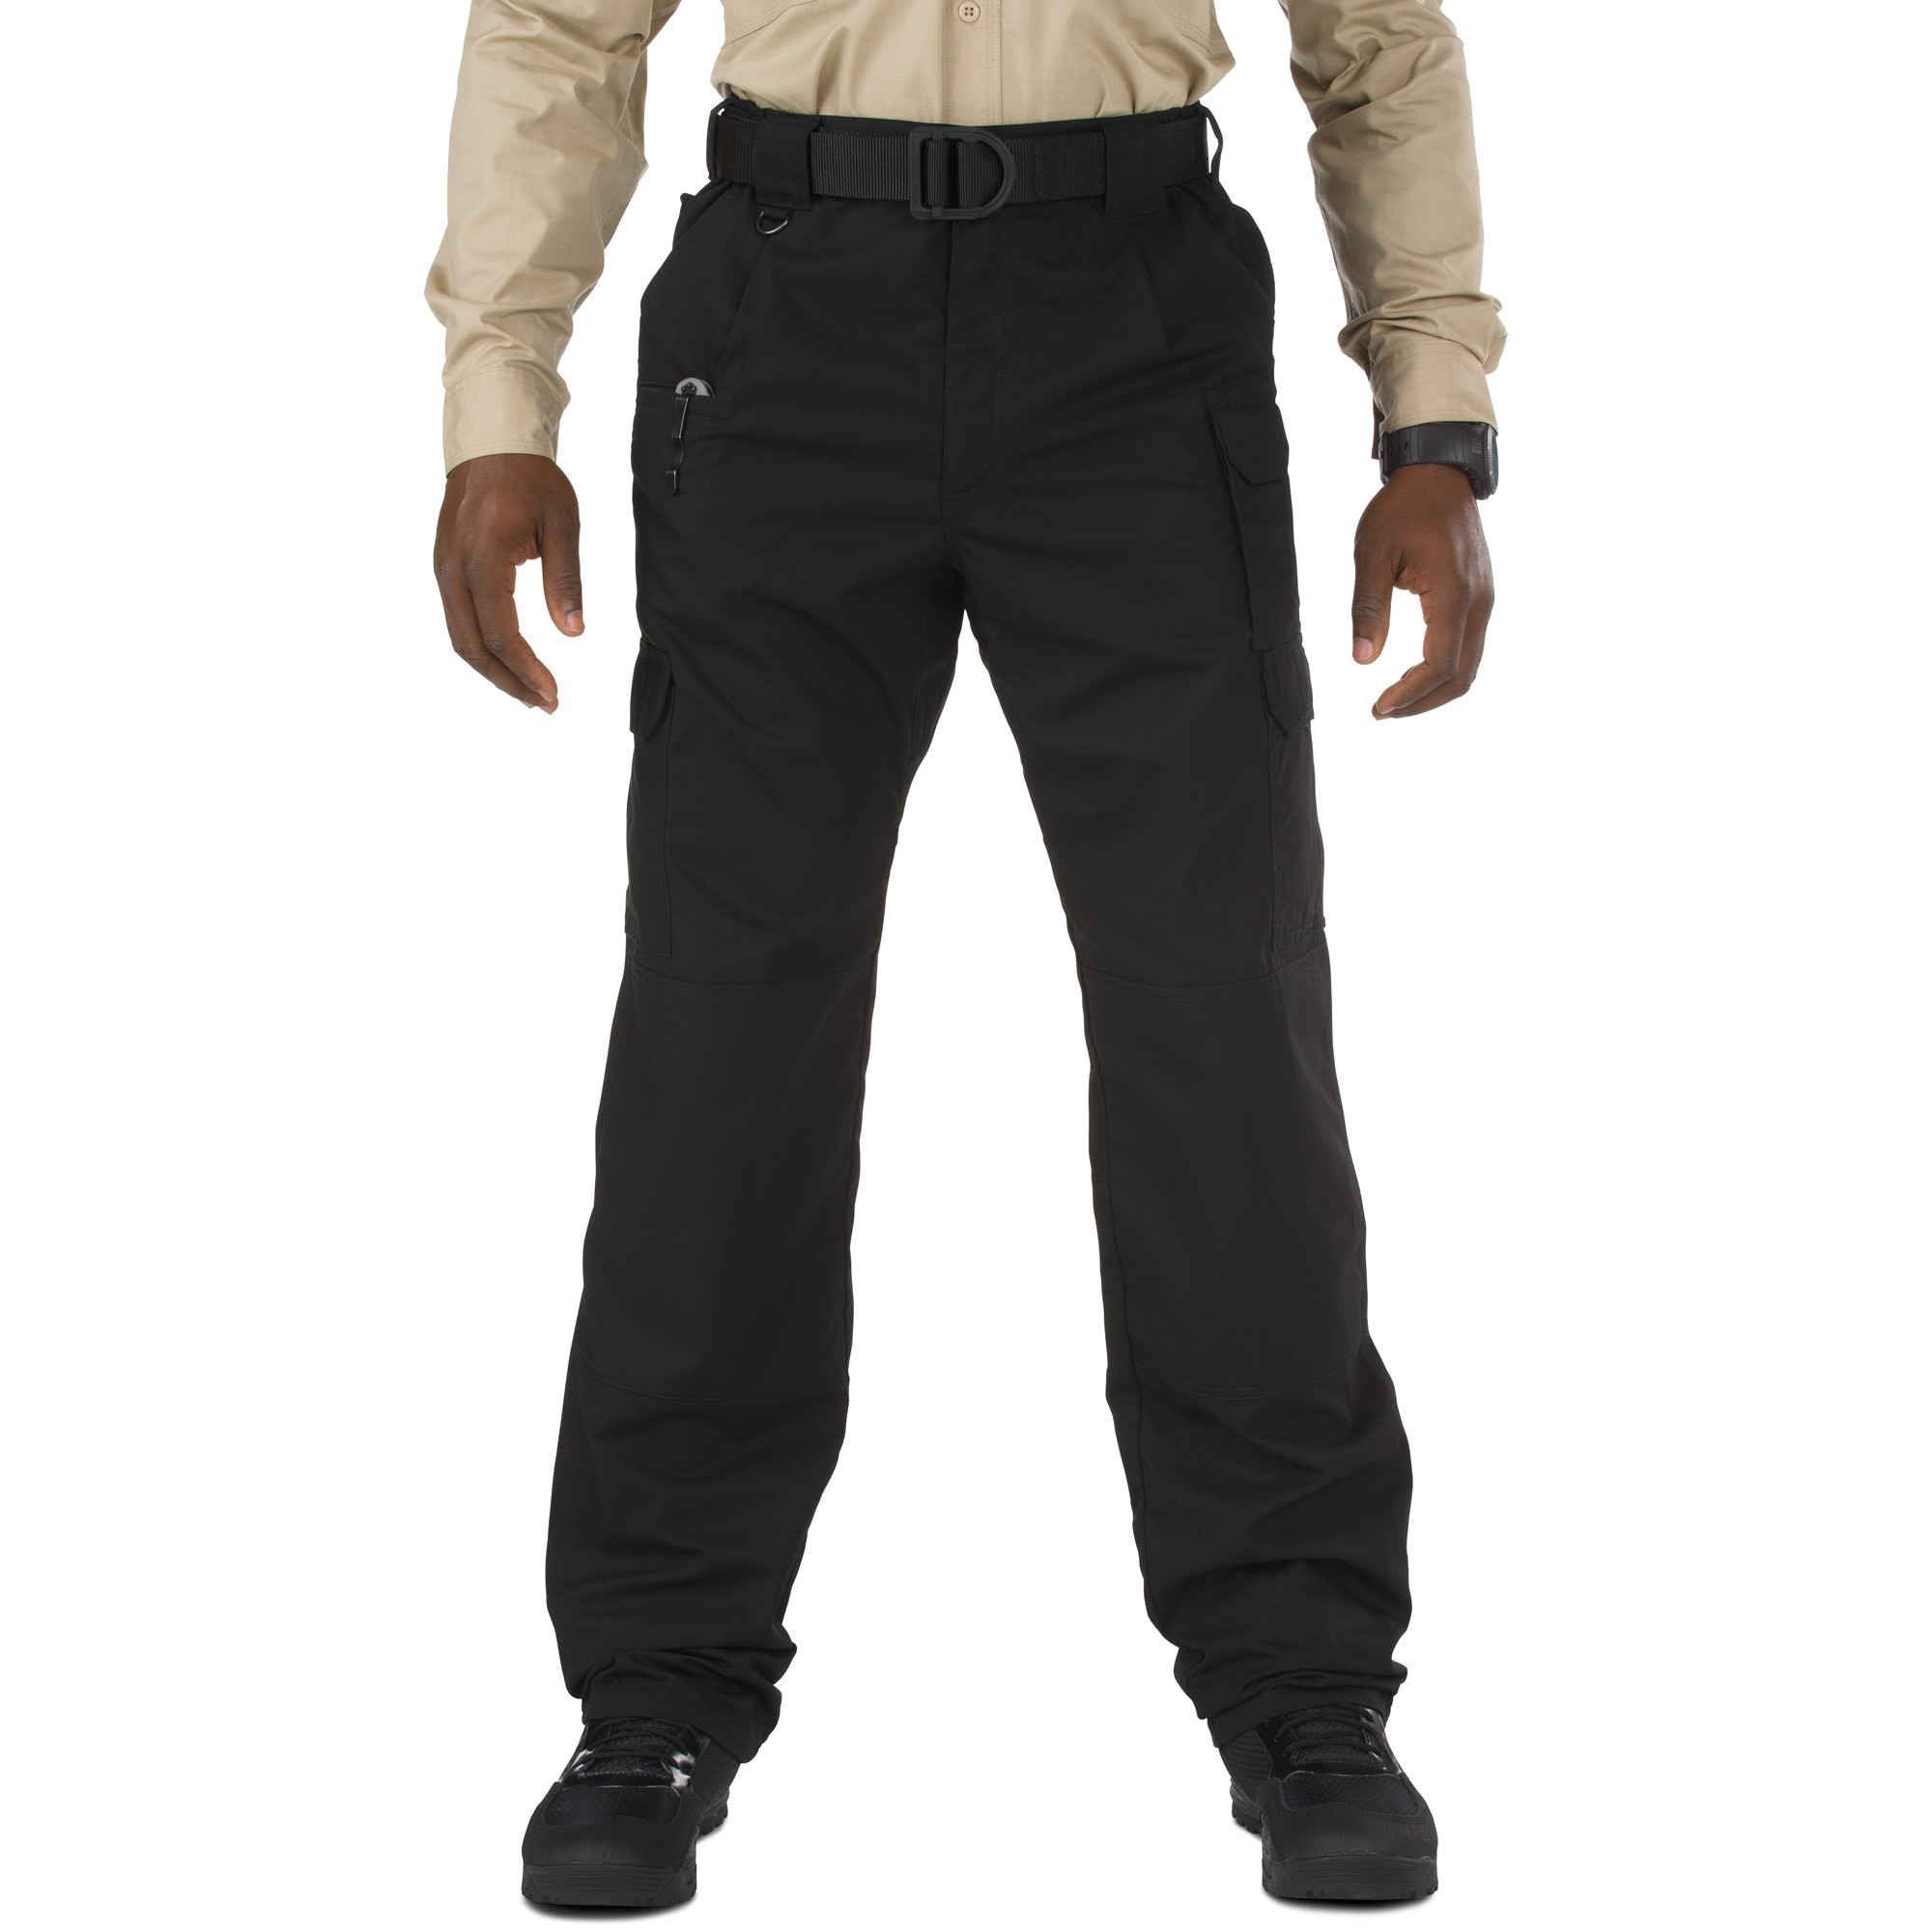 5.11 Tactical Taclite Pro Pants - Black Pants 5.11 Tactical 28 30 Tactical Gear Supplier Tactical Distributors Australia